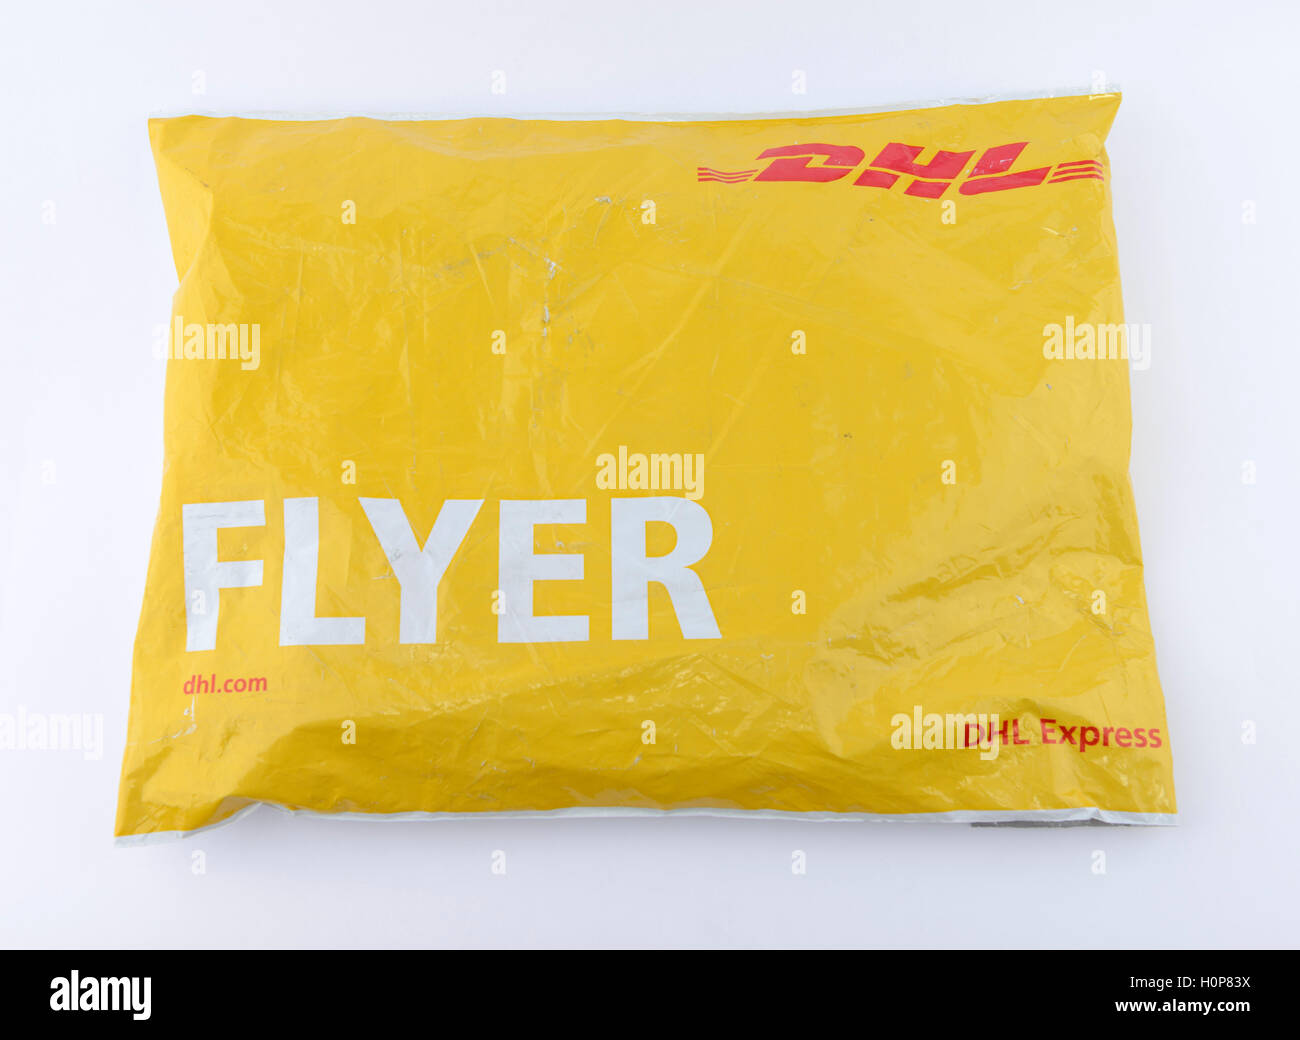 DHL flyer confezione busta Foto stock - Alamy